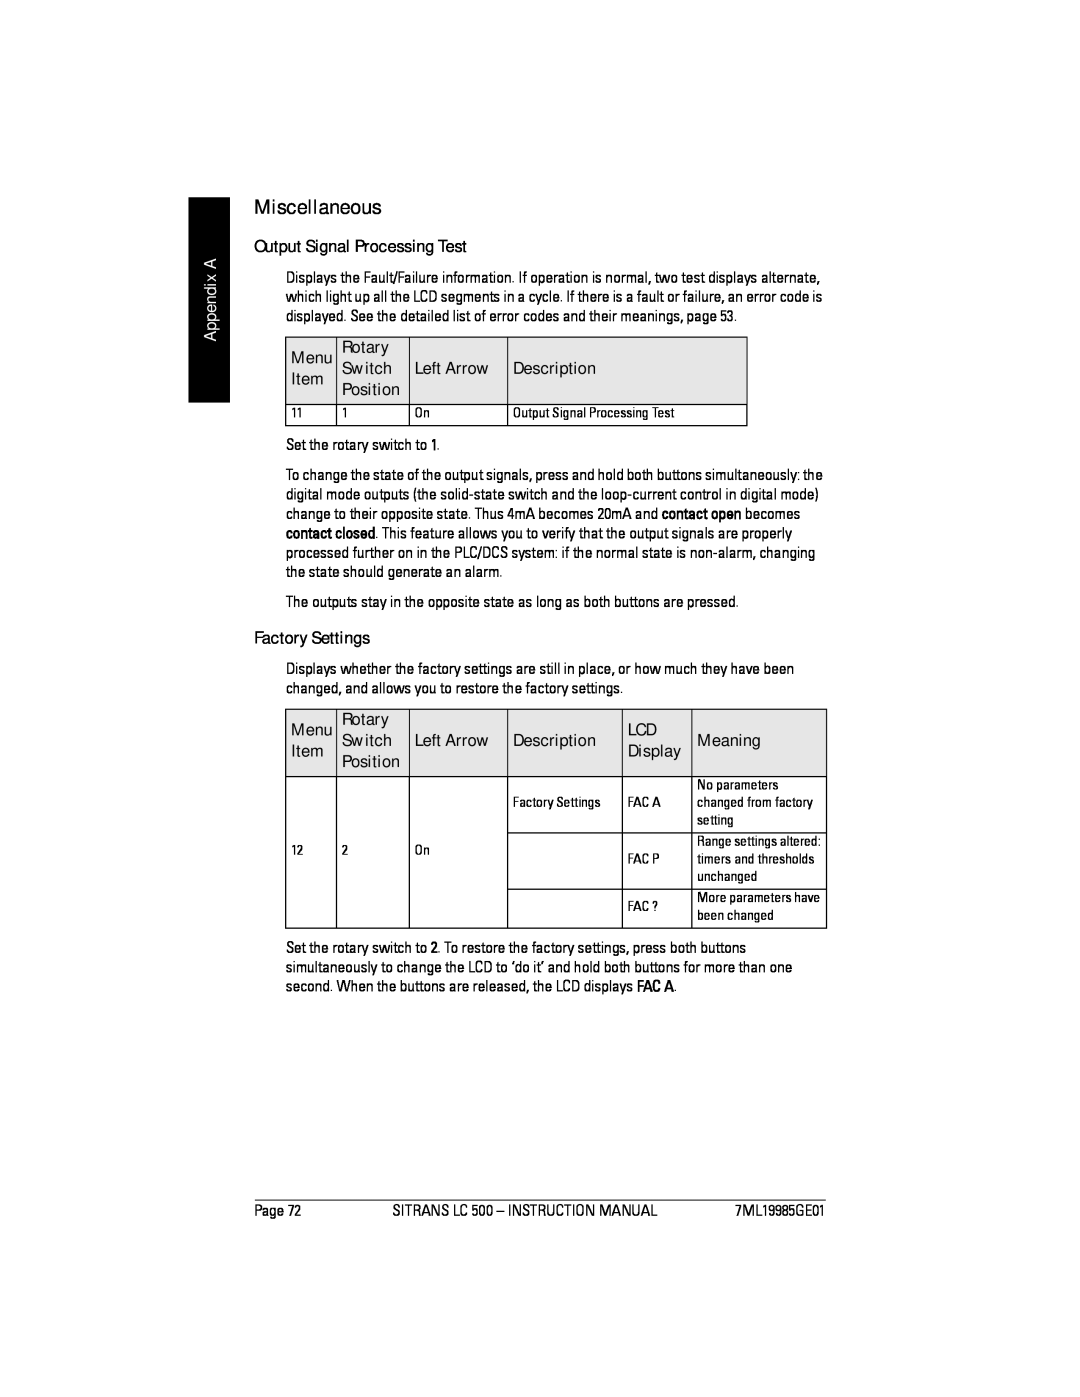 Siemens LC 500, Sitrans instruction manual Miscellaneous, Appendix A 